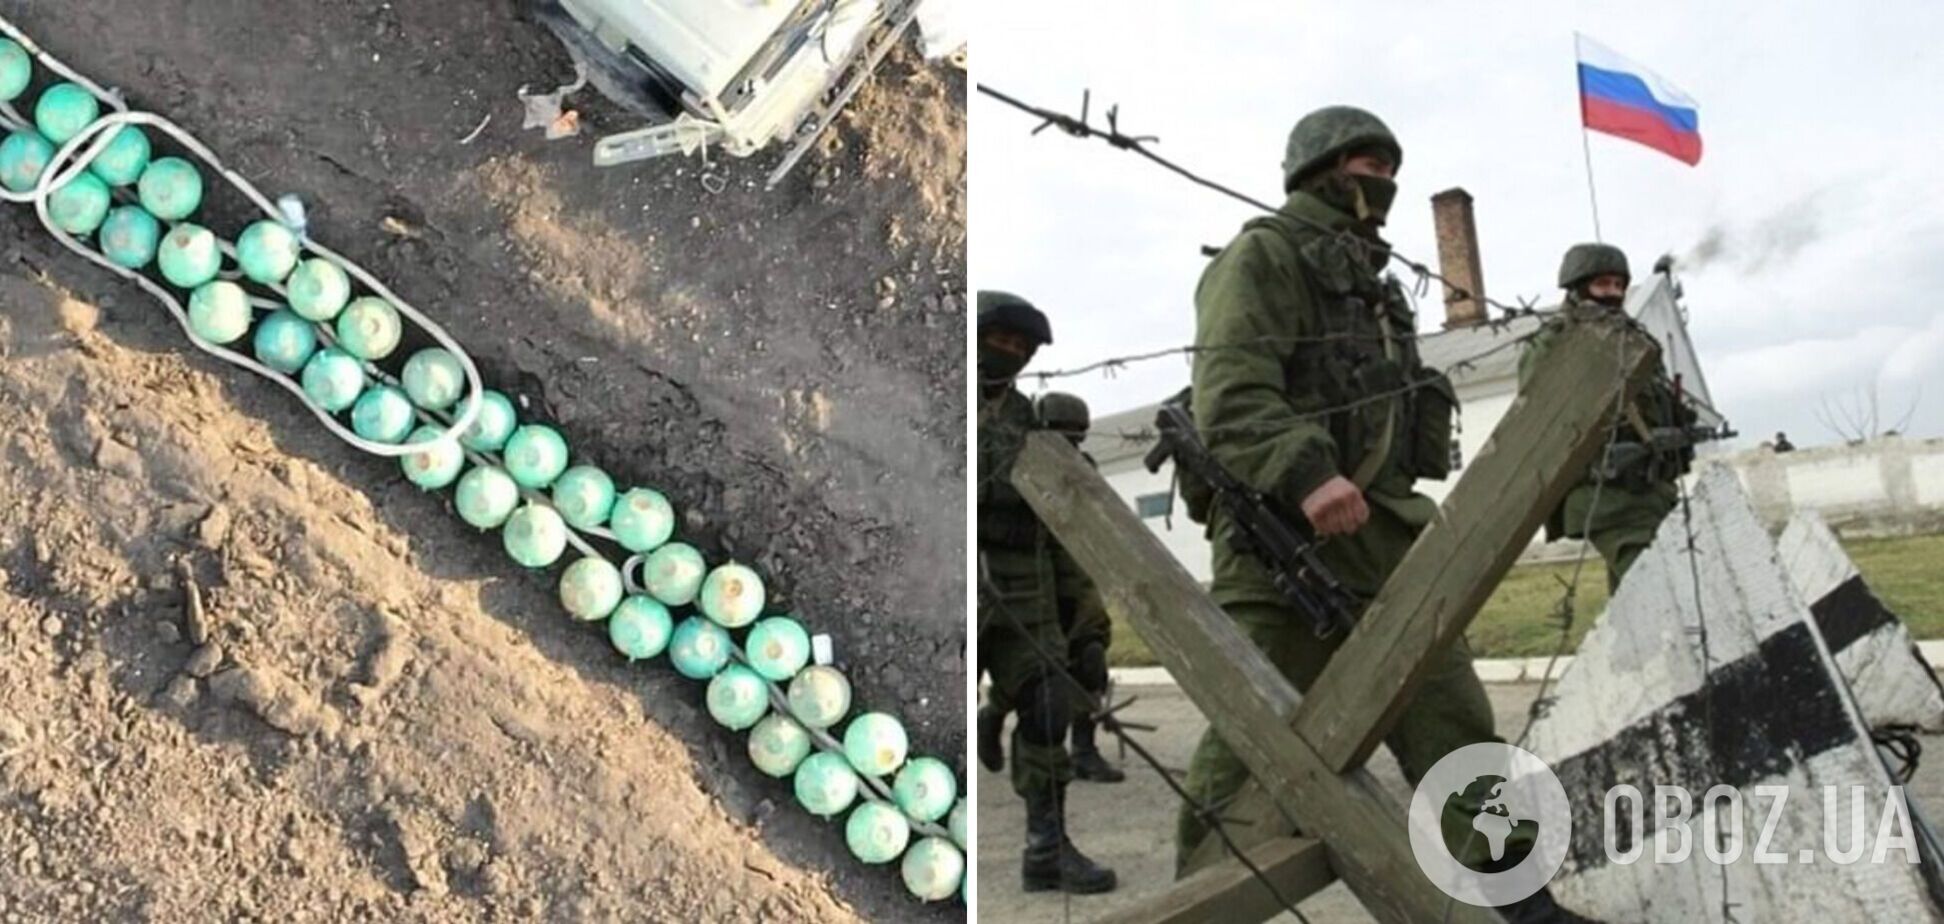 Войска РФ начали зарывать странные контейнеры на фронте: в сети показали фото и видео